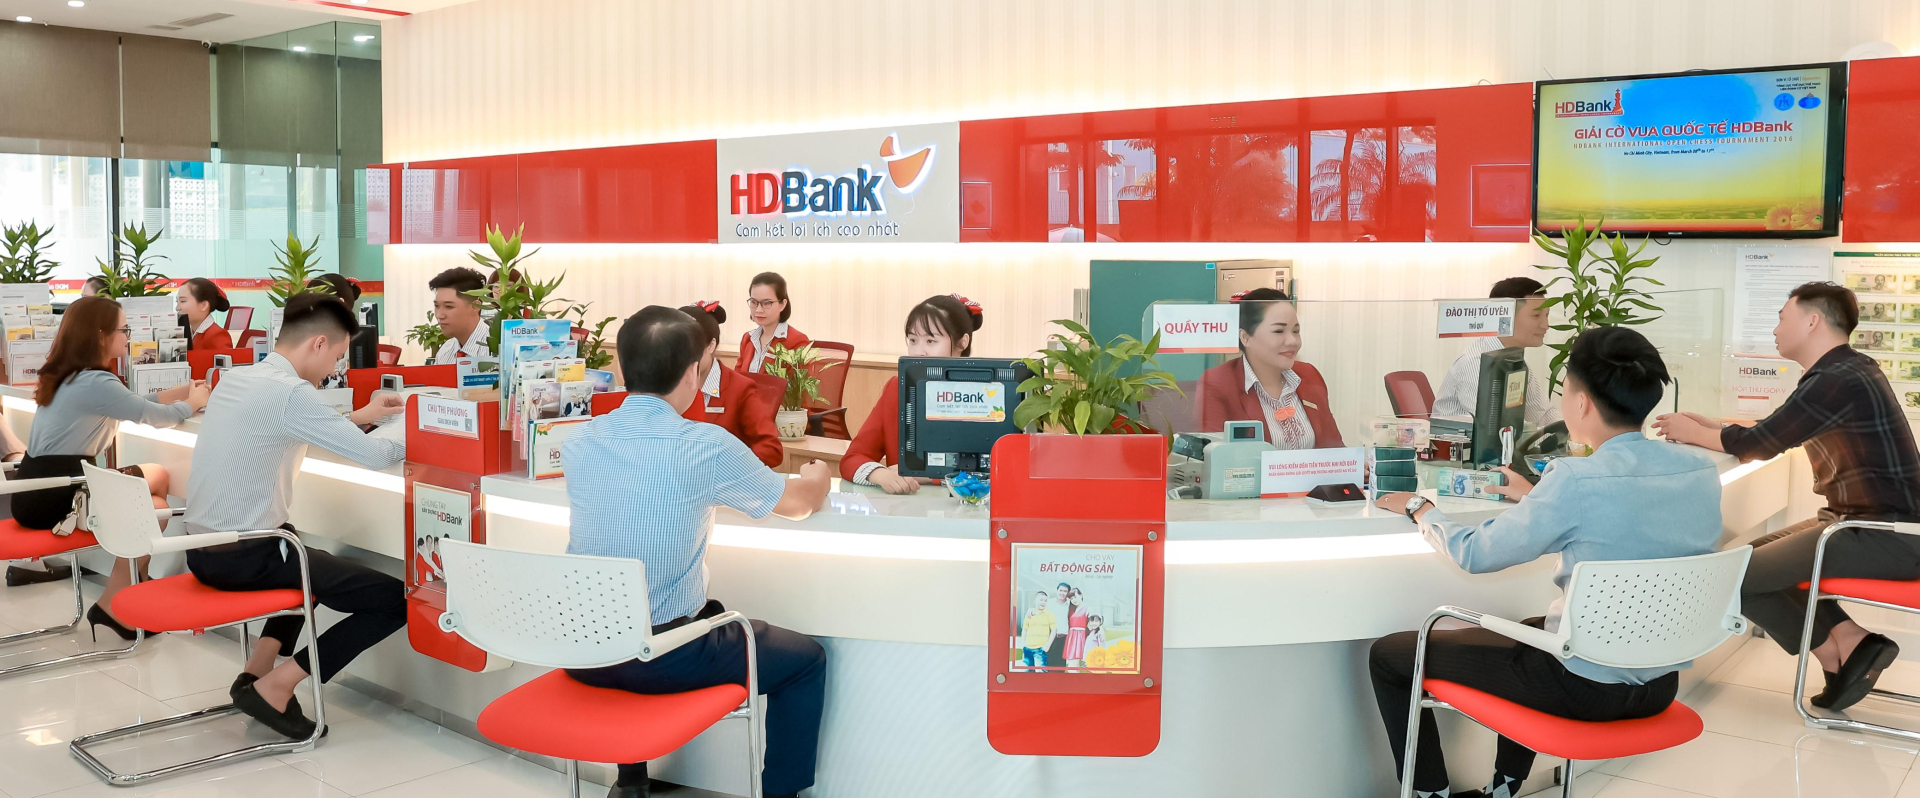 HDBank chốt quyền chia cổ tức bằng tiền và cổ phiếu tổng tỷ lệ 30% - ảnh 1